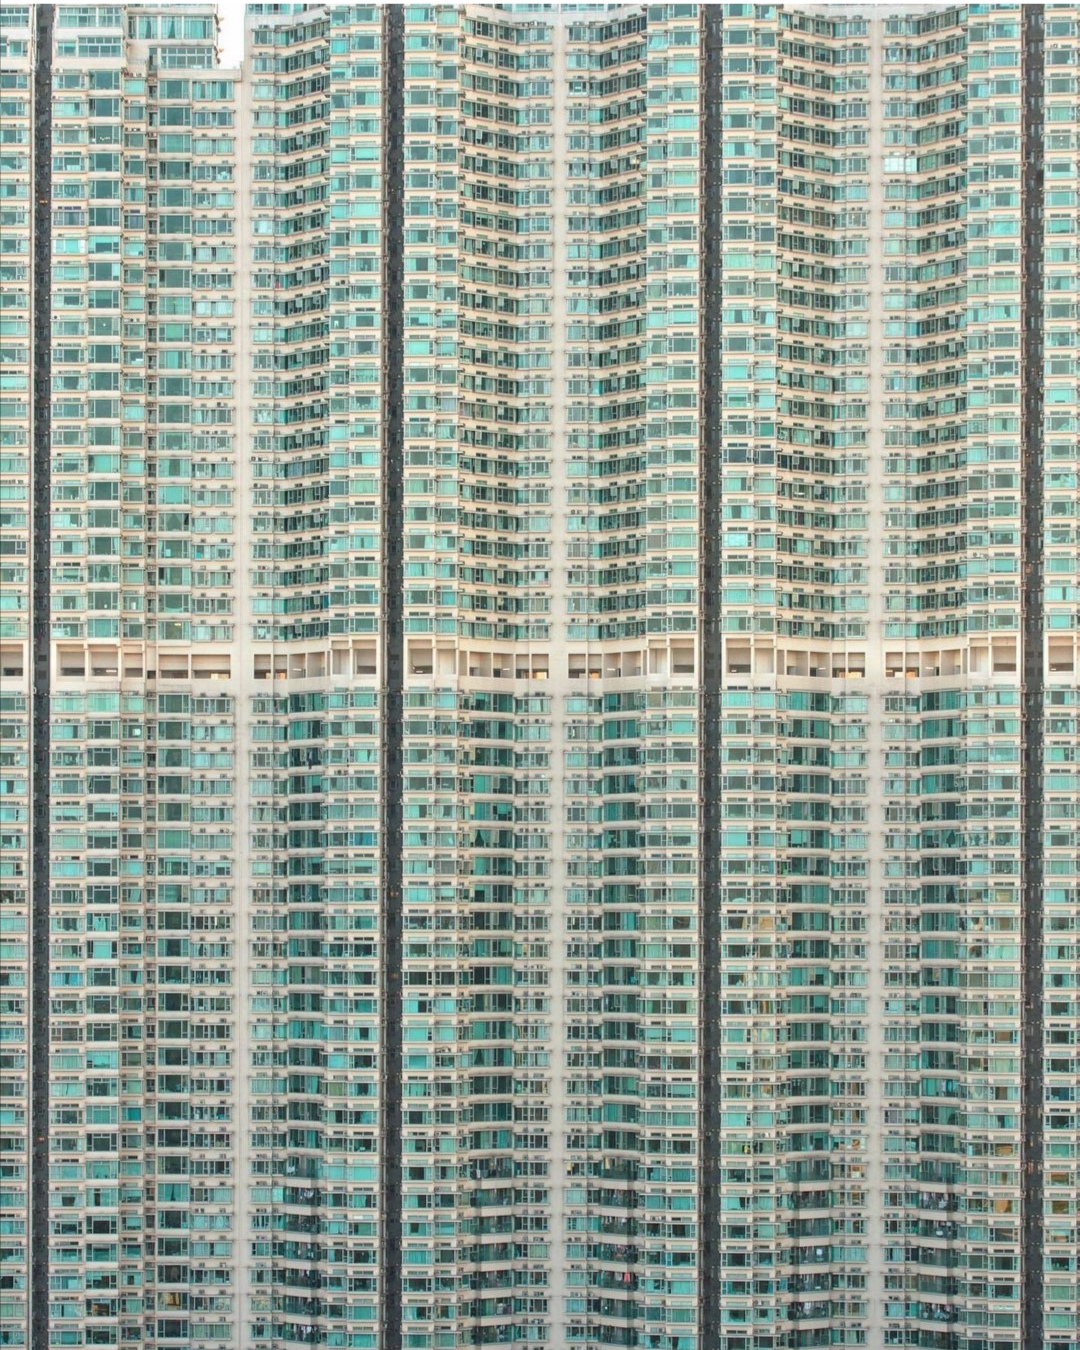 Residential buildings in Hong Kong 